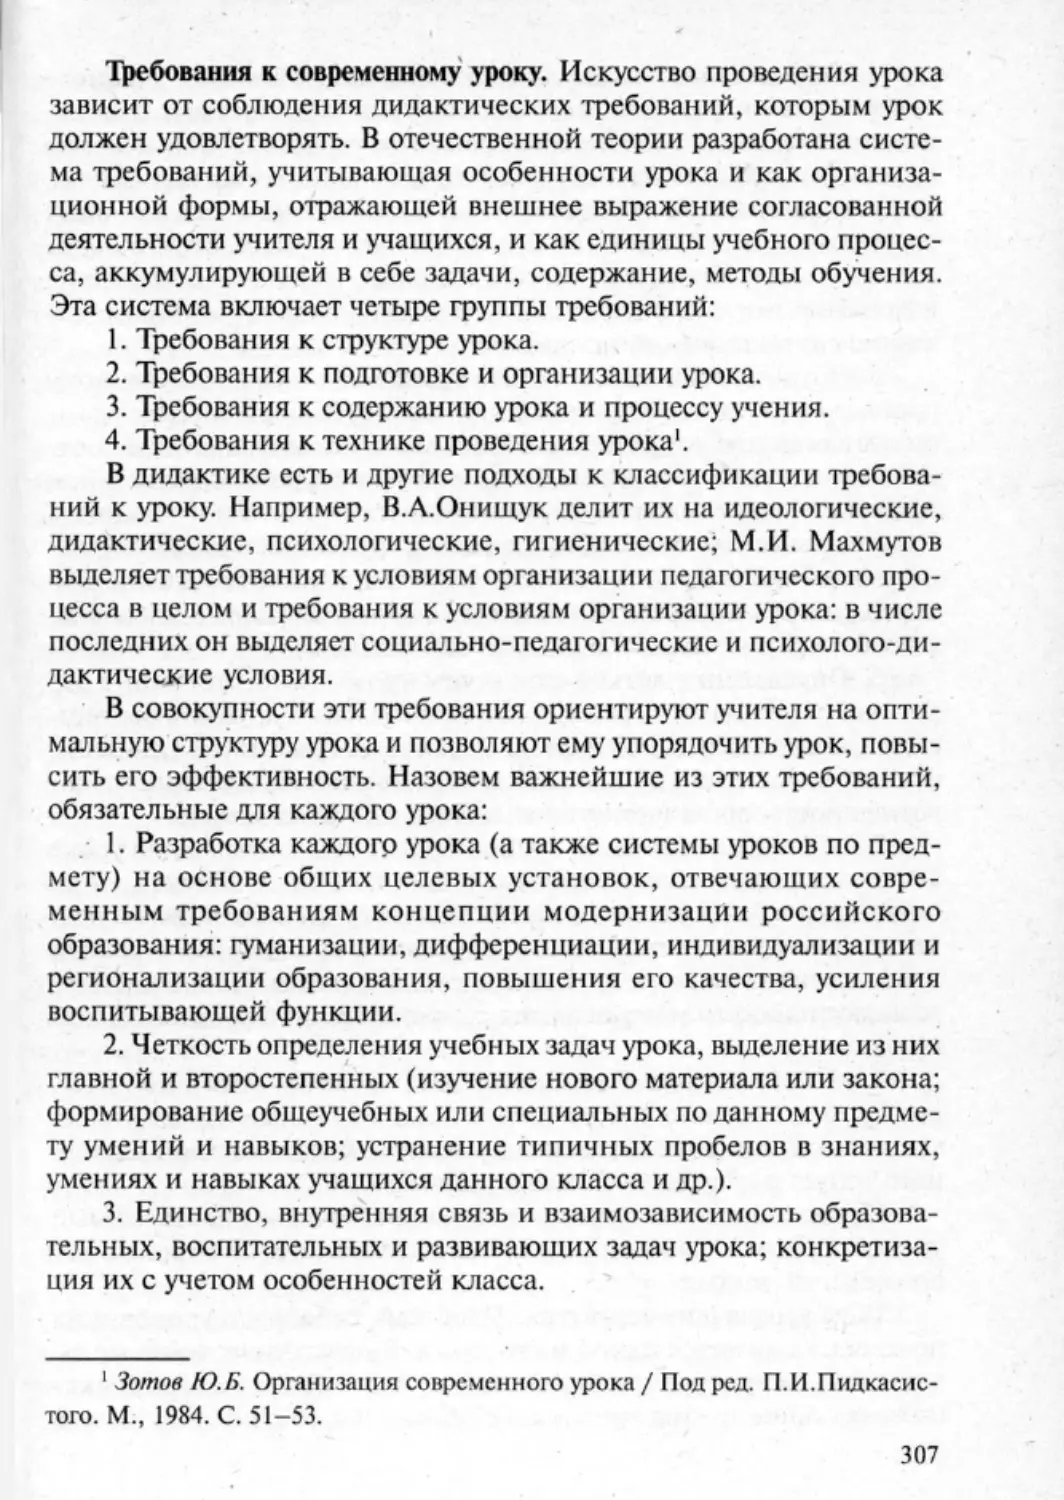 Загрекова Л.В., Николаева В.В - 0308